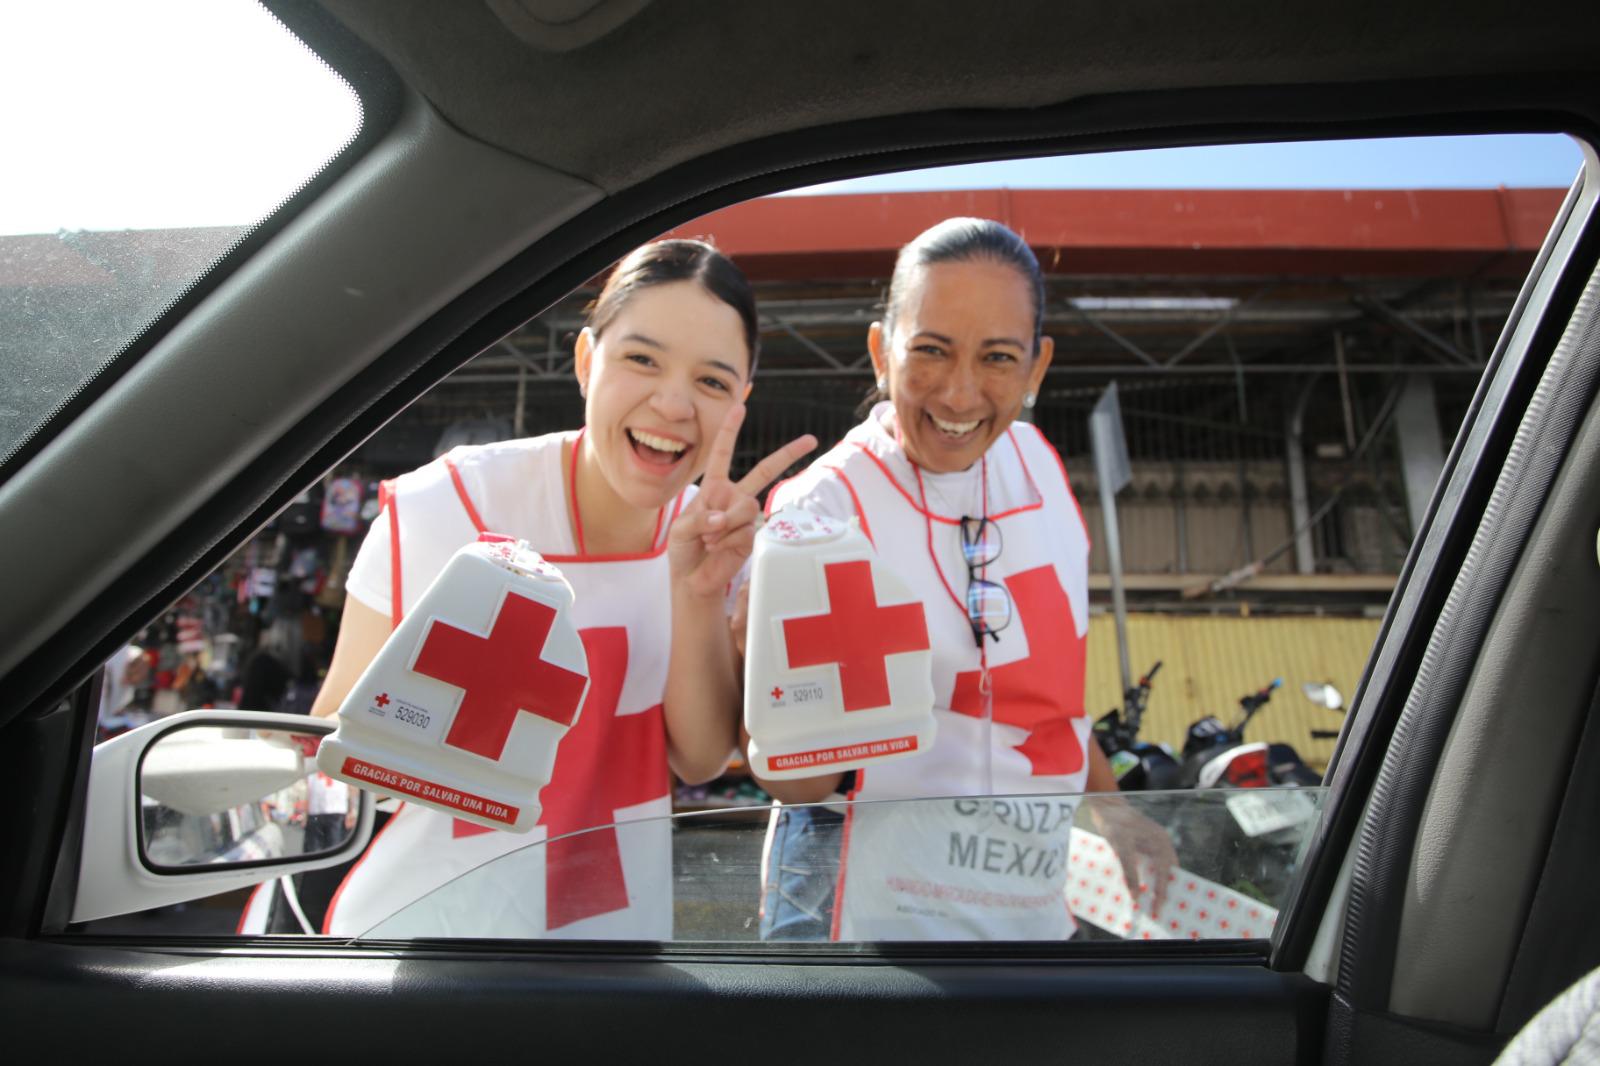 $!Cruz Roja Mazatlán desfila en búsqueda del apoyo ciudadano; se requieren más de 4 millones de pesos